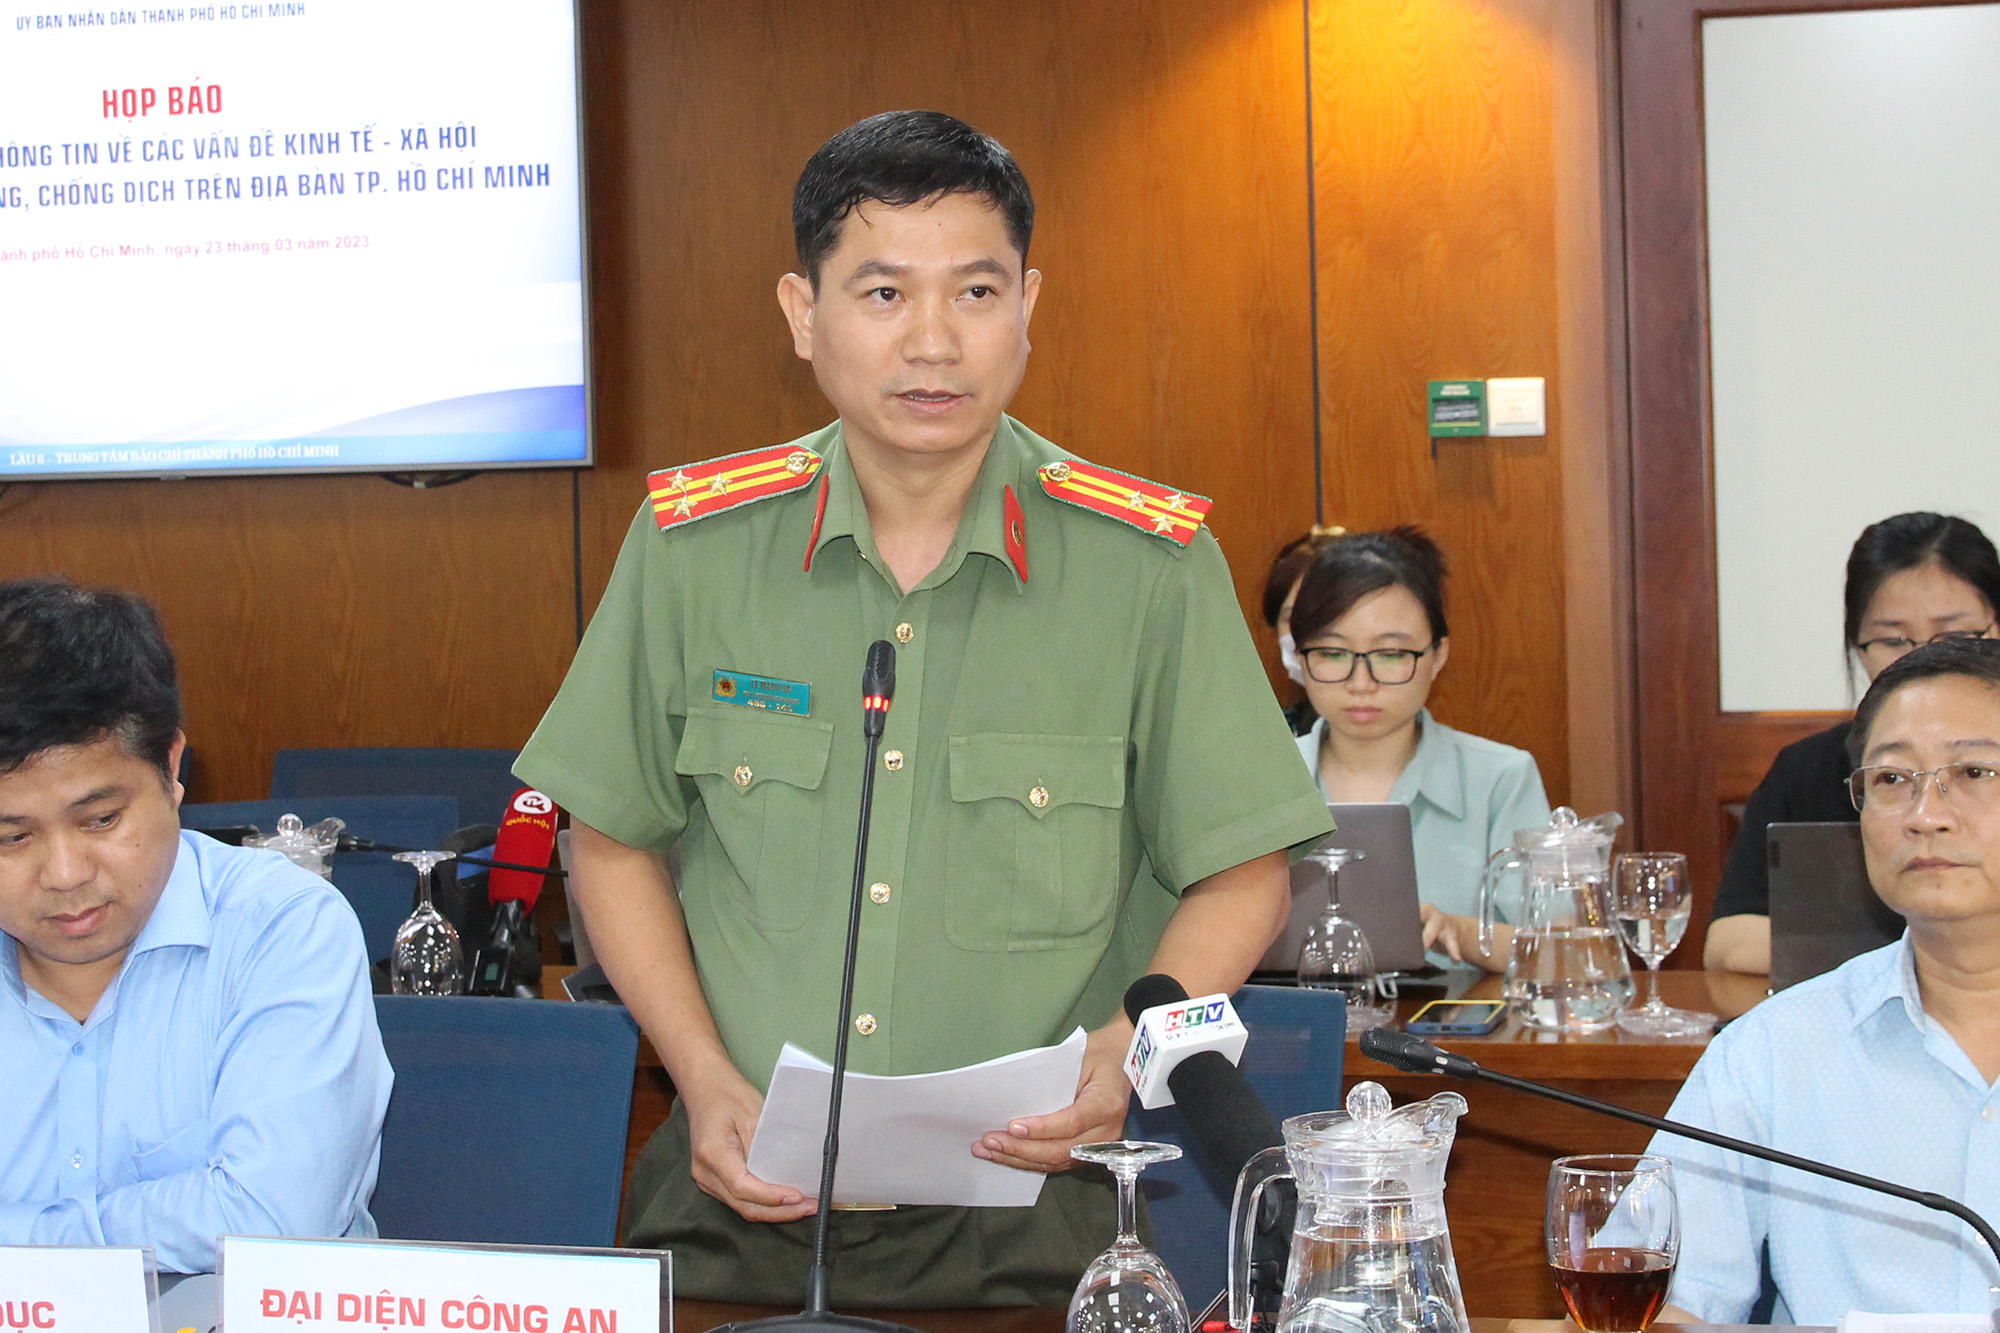 Thượng tá Lê Mạnh Hà, Phó Trưởng Phòng tham mưu Công an TP. Hồ Chí Minh thông tin tại buổi họp báo (Ảnh: H.Hào).